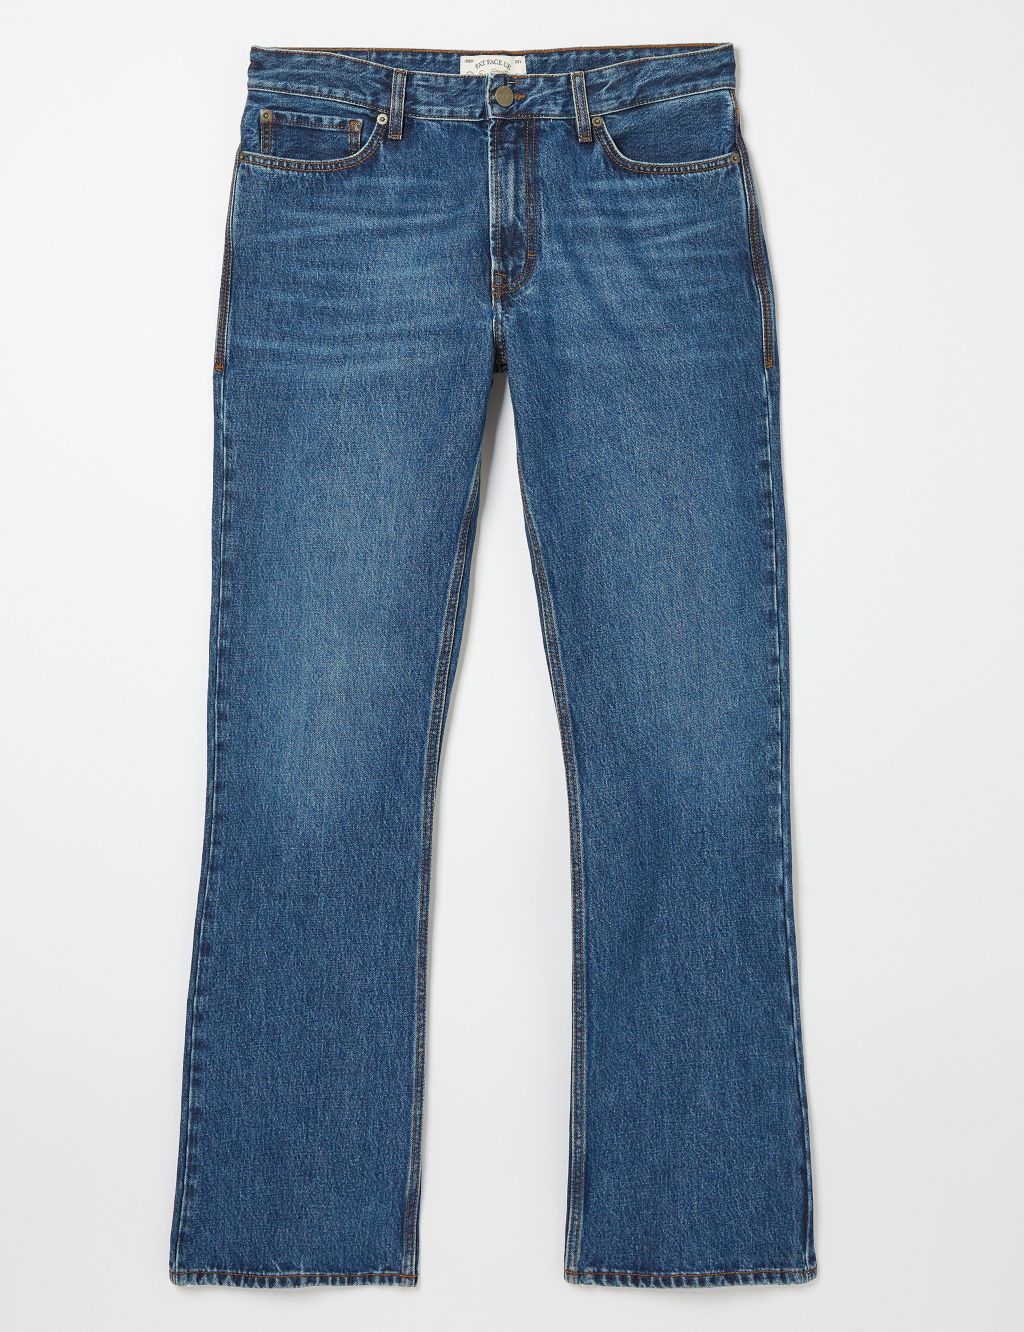 Slim Fit 5 Pocket Jeans image 2